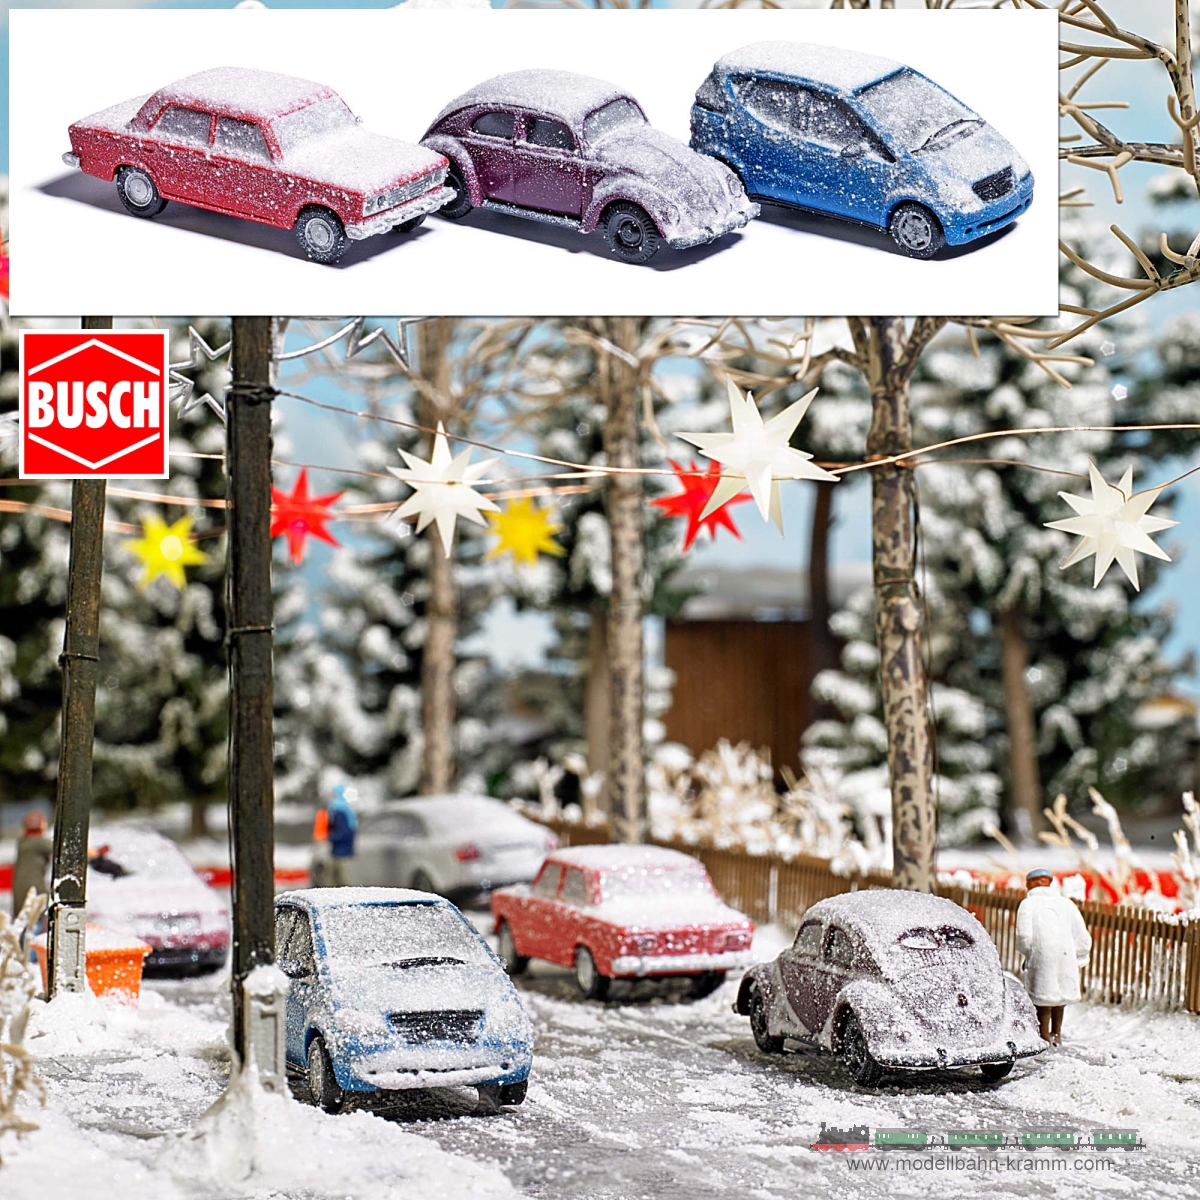 Busch-Automodelle 89010, EAN 4001738890105: 3 verschneite Autos